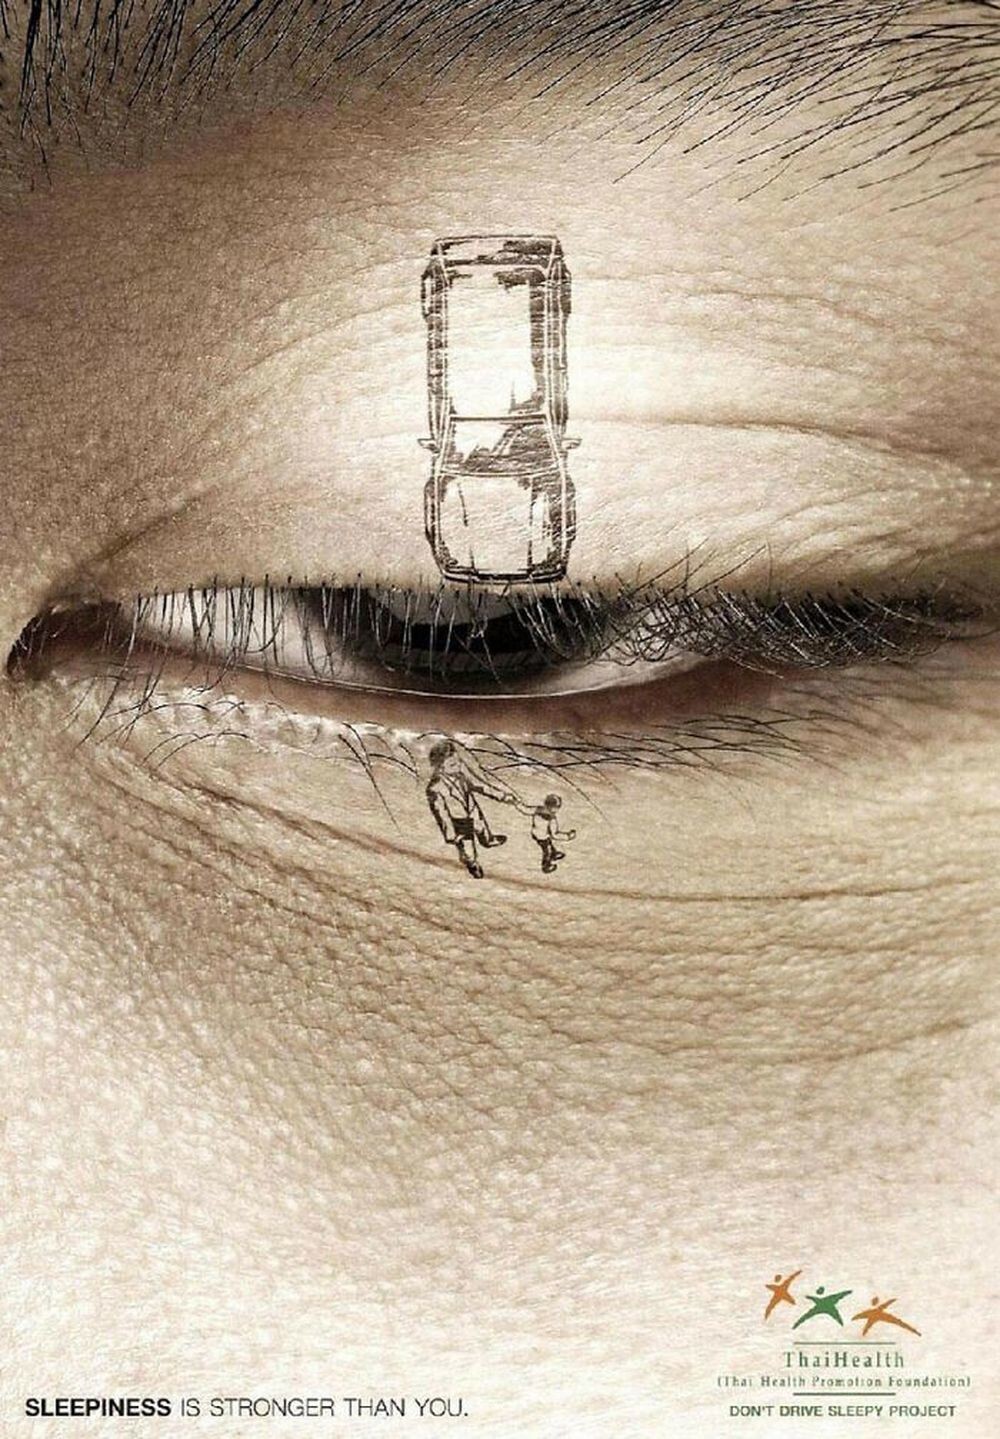 28. Социальная реклама о безопасном вождении: «Сонливость сильнее тебя»